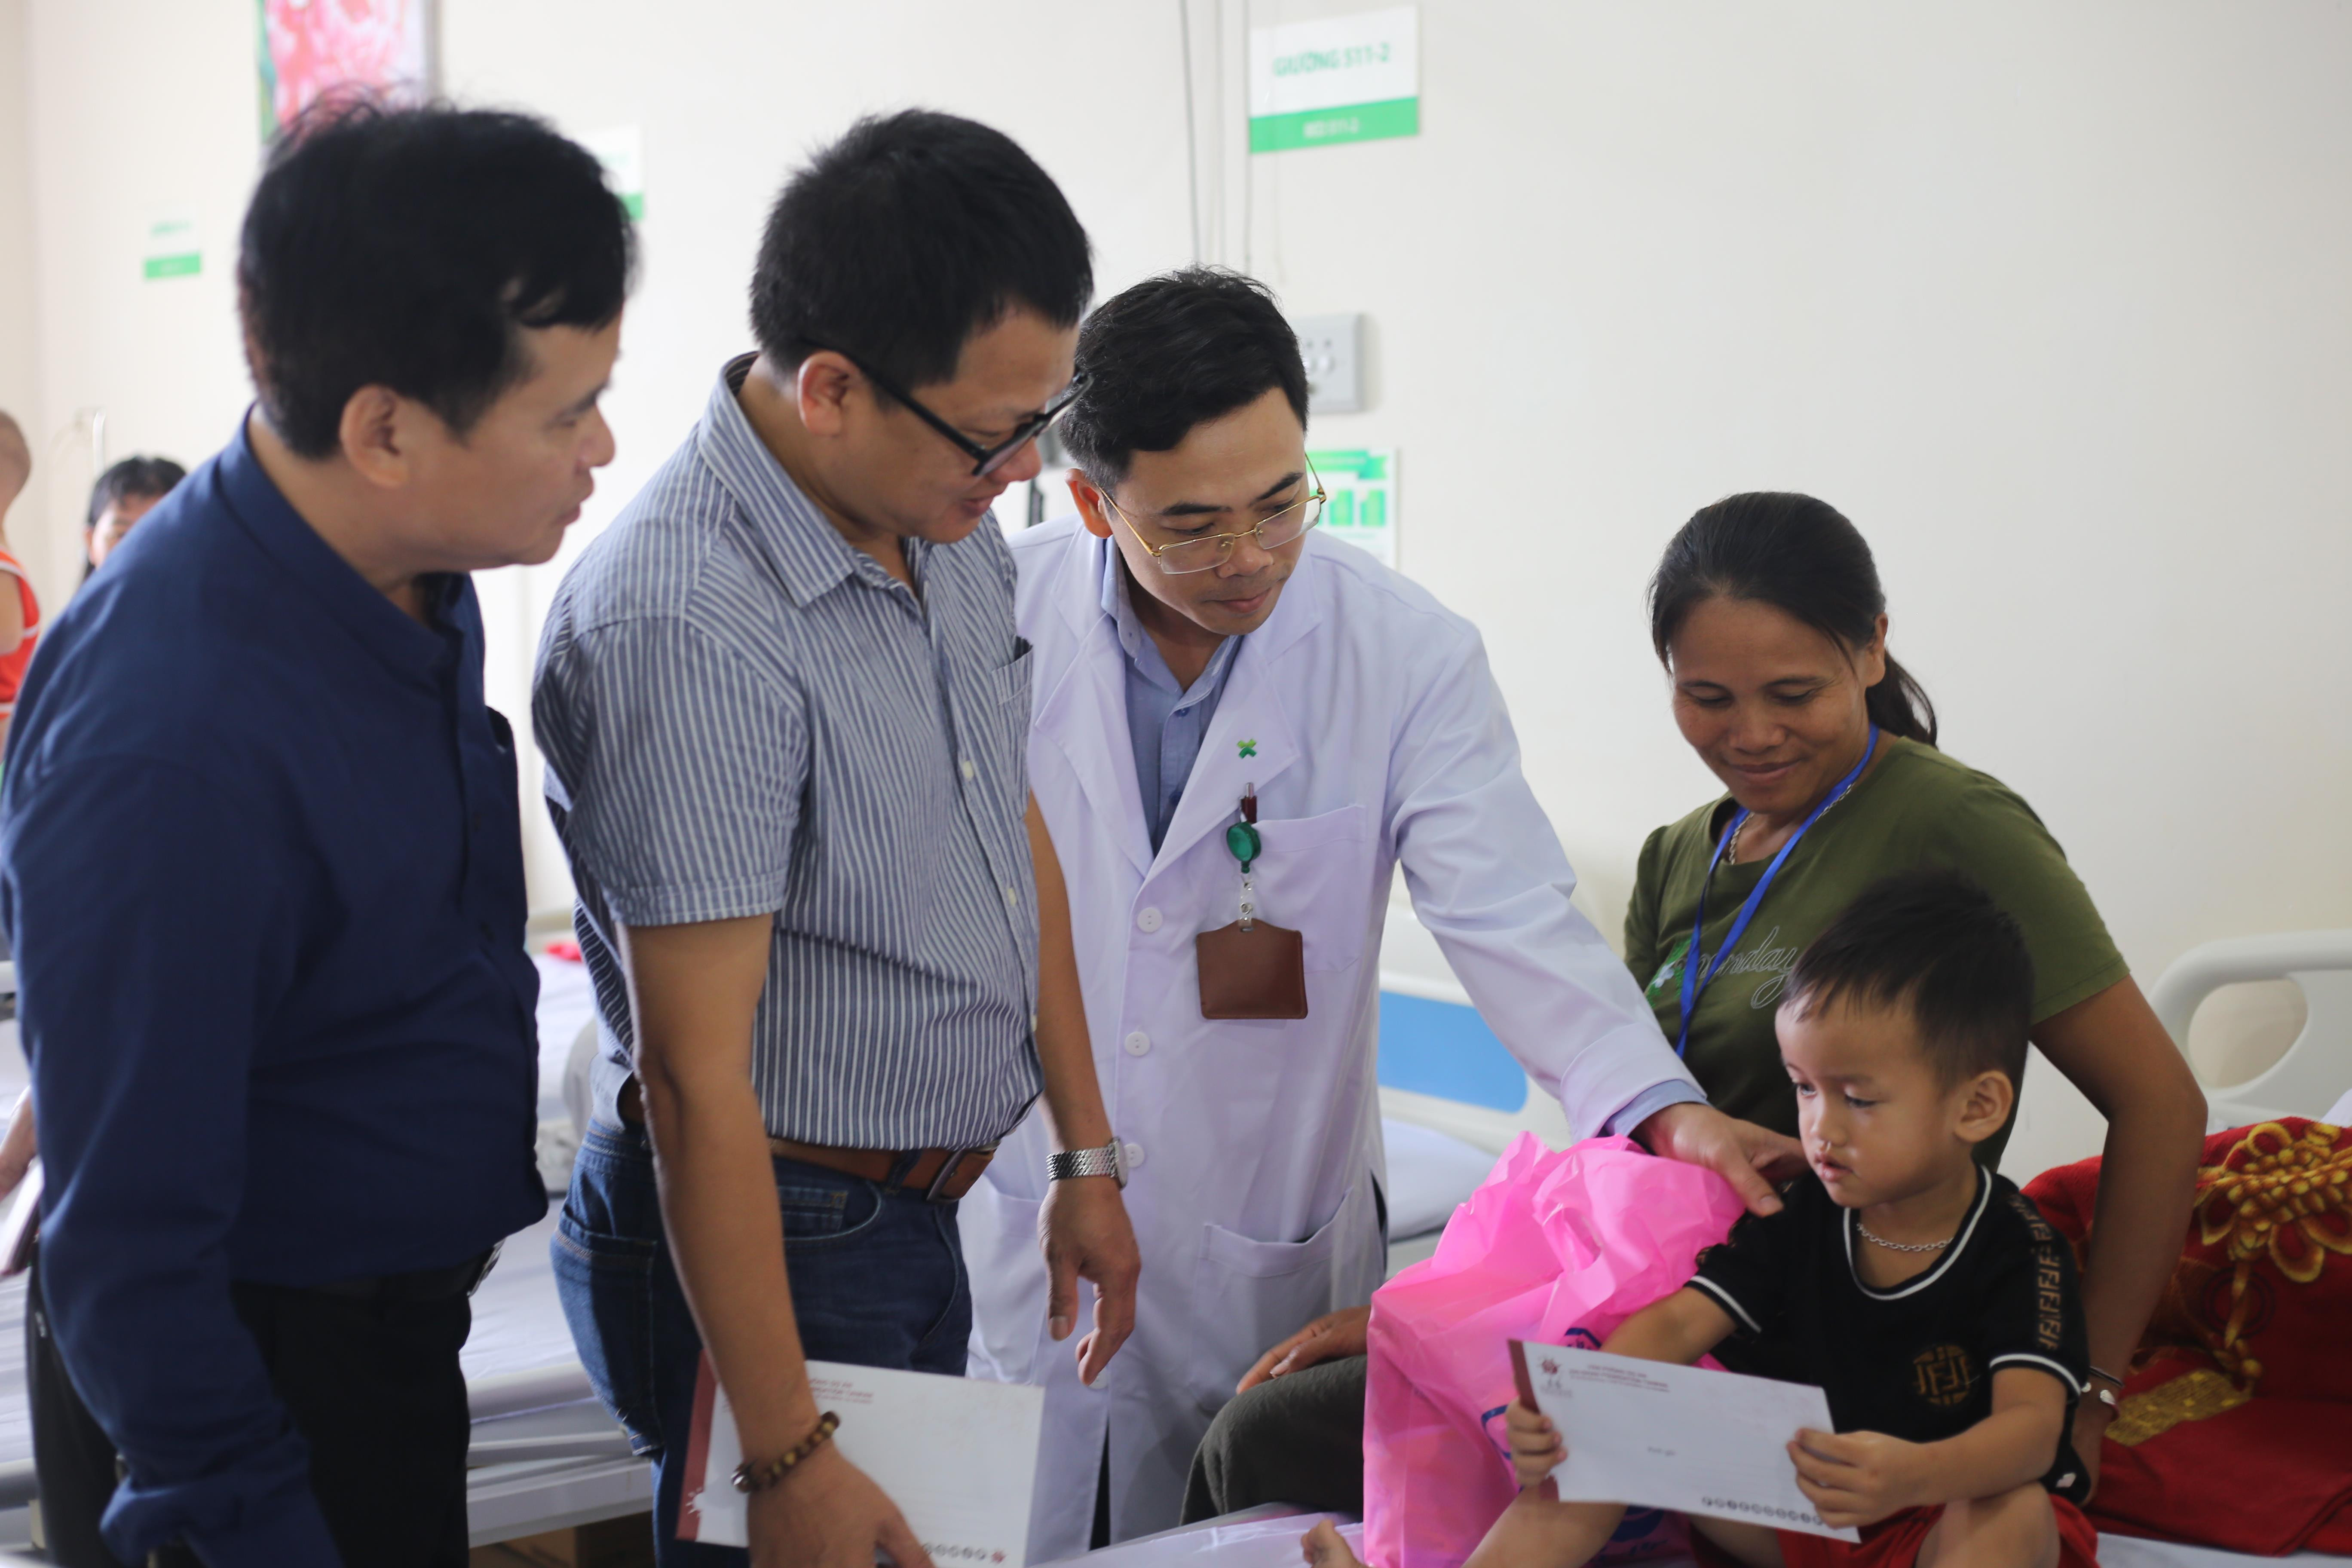 Đại diện các đơn vị tổ  chức chương trình tặng quà cho các em nhỏ bị khuyết tật trong chương trình phẫu thuật nhân đạo. Ảnh: Kim Chung